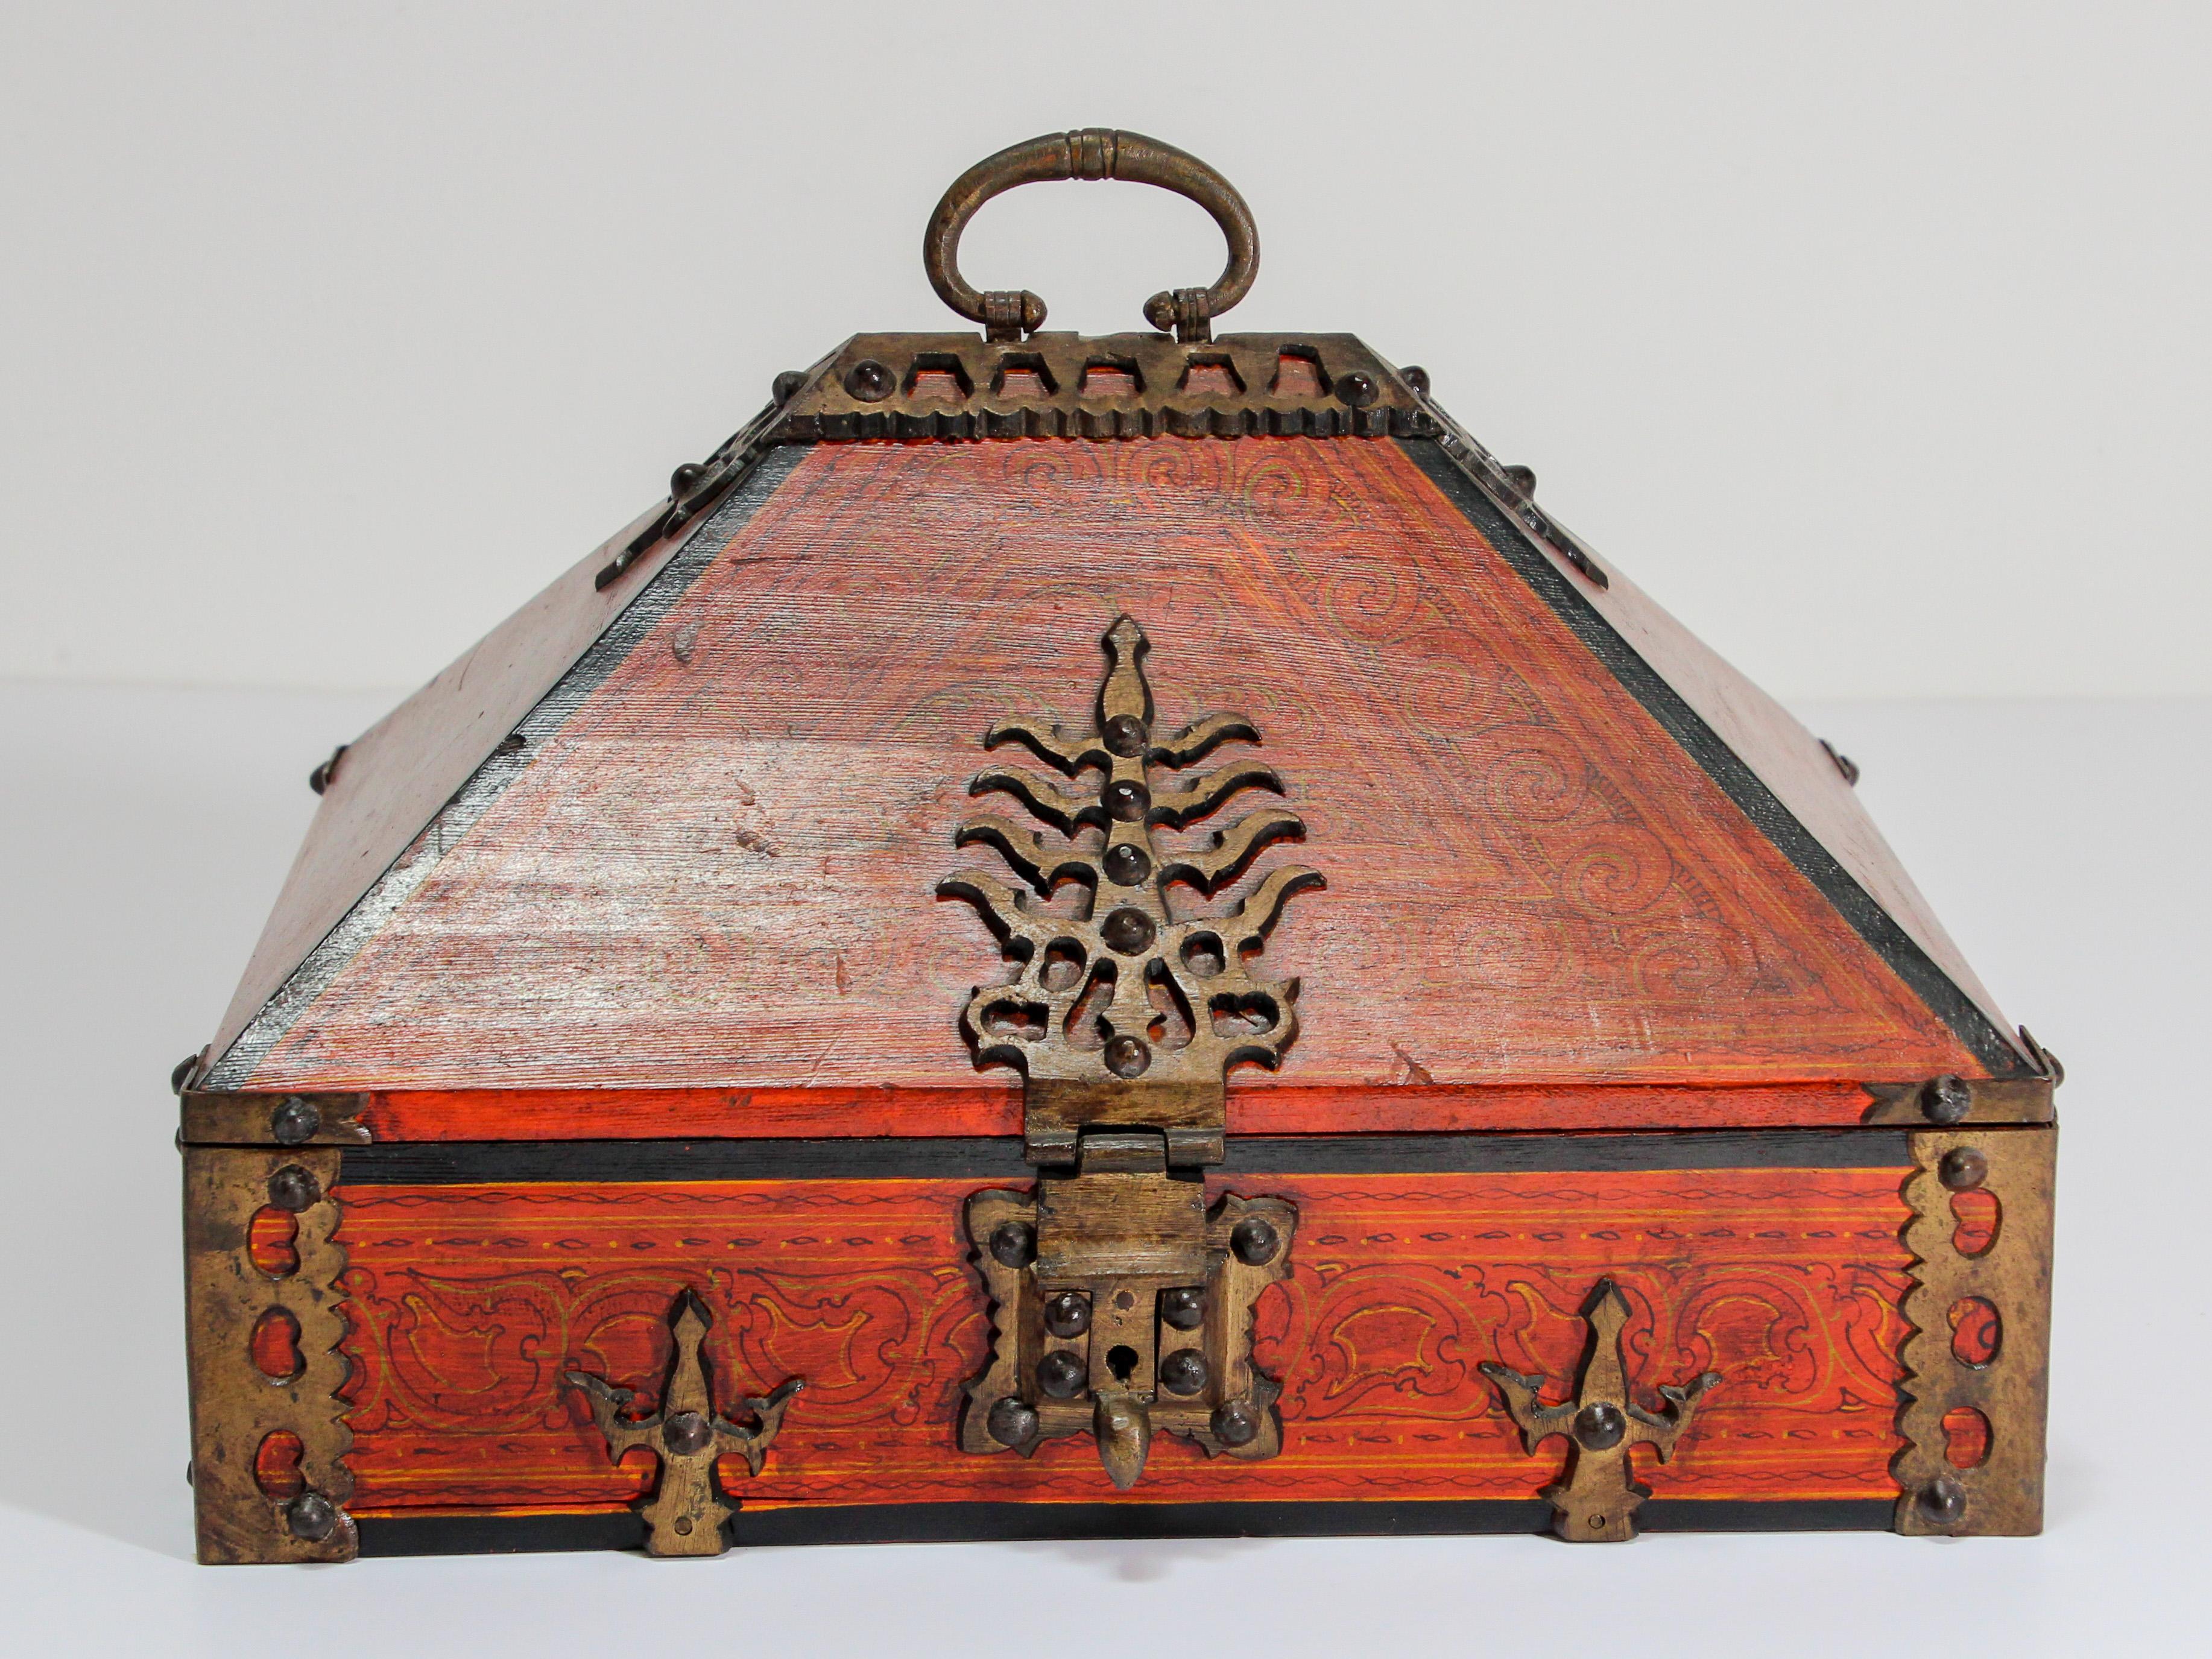 Große Mitgiftbox aus Teakholz mit Messing, spätes 19. Jahrhundert, Indien.
Indische Mitgiftbox aus lackiertem Teakholz mit dekorativem Messing. Diese große ethnische indische Schmuckschatulle ist handbemalt in Rot mit einem Messingdesign, das die